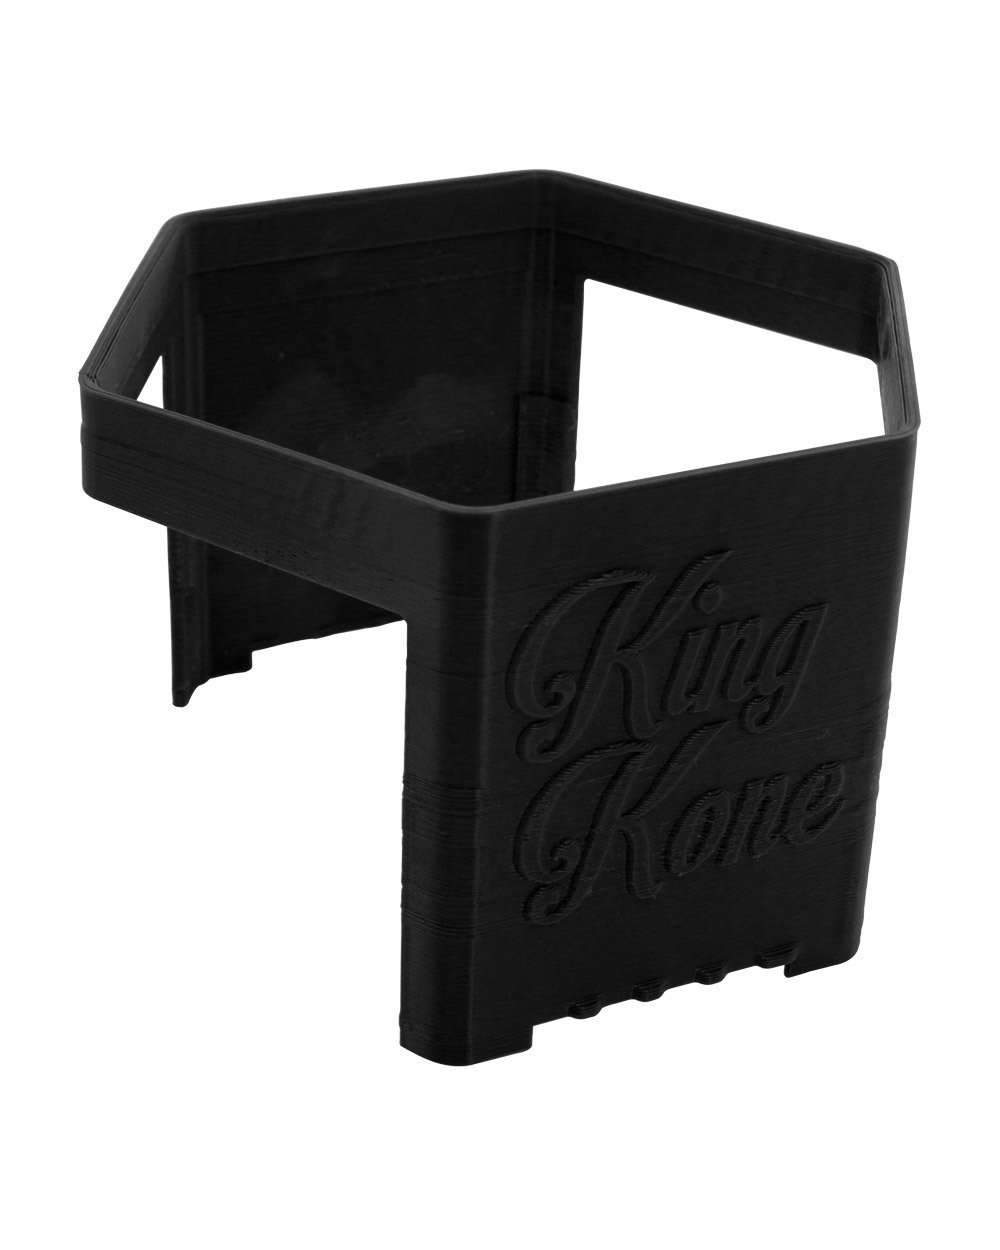 KING KONE | Black Vibration Pre-Rolled Cones Filling Machine 84/98/109mm | Fill 169 Cones Per Run - 7